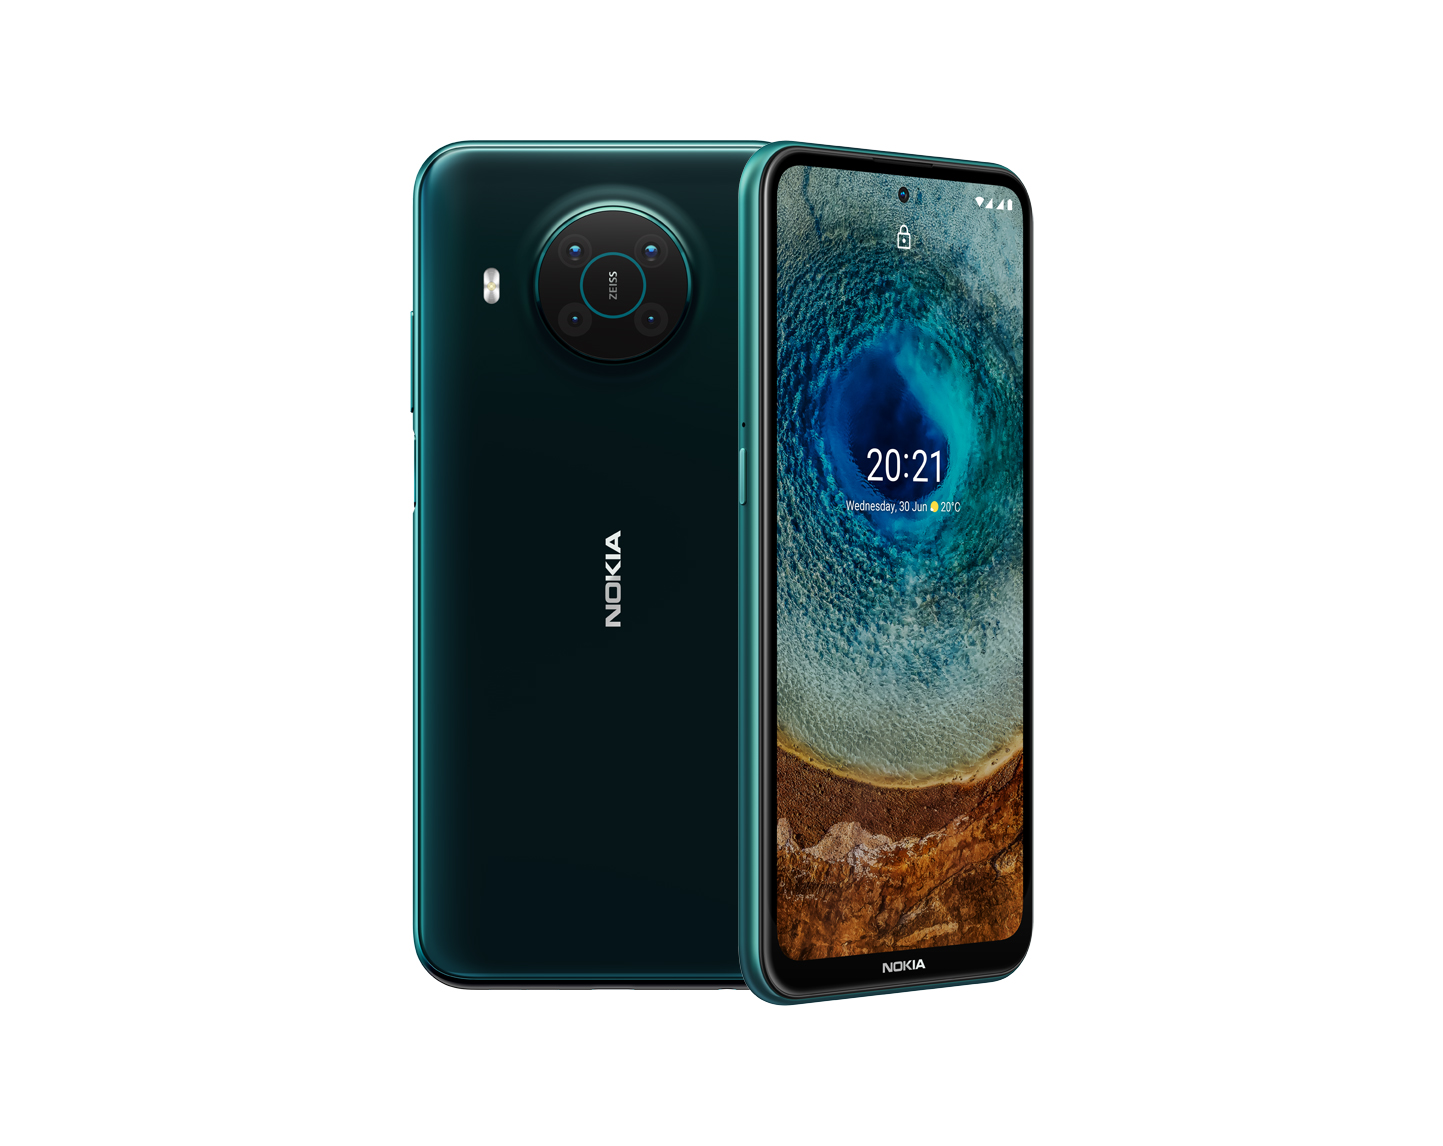 Nokia X10 smartphone evaluation: Decent 5G phone with four cameras